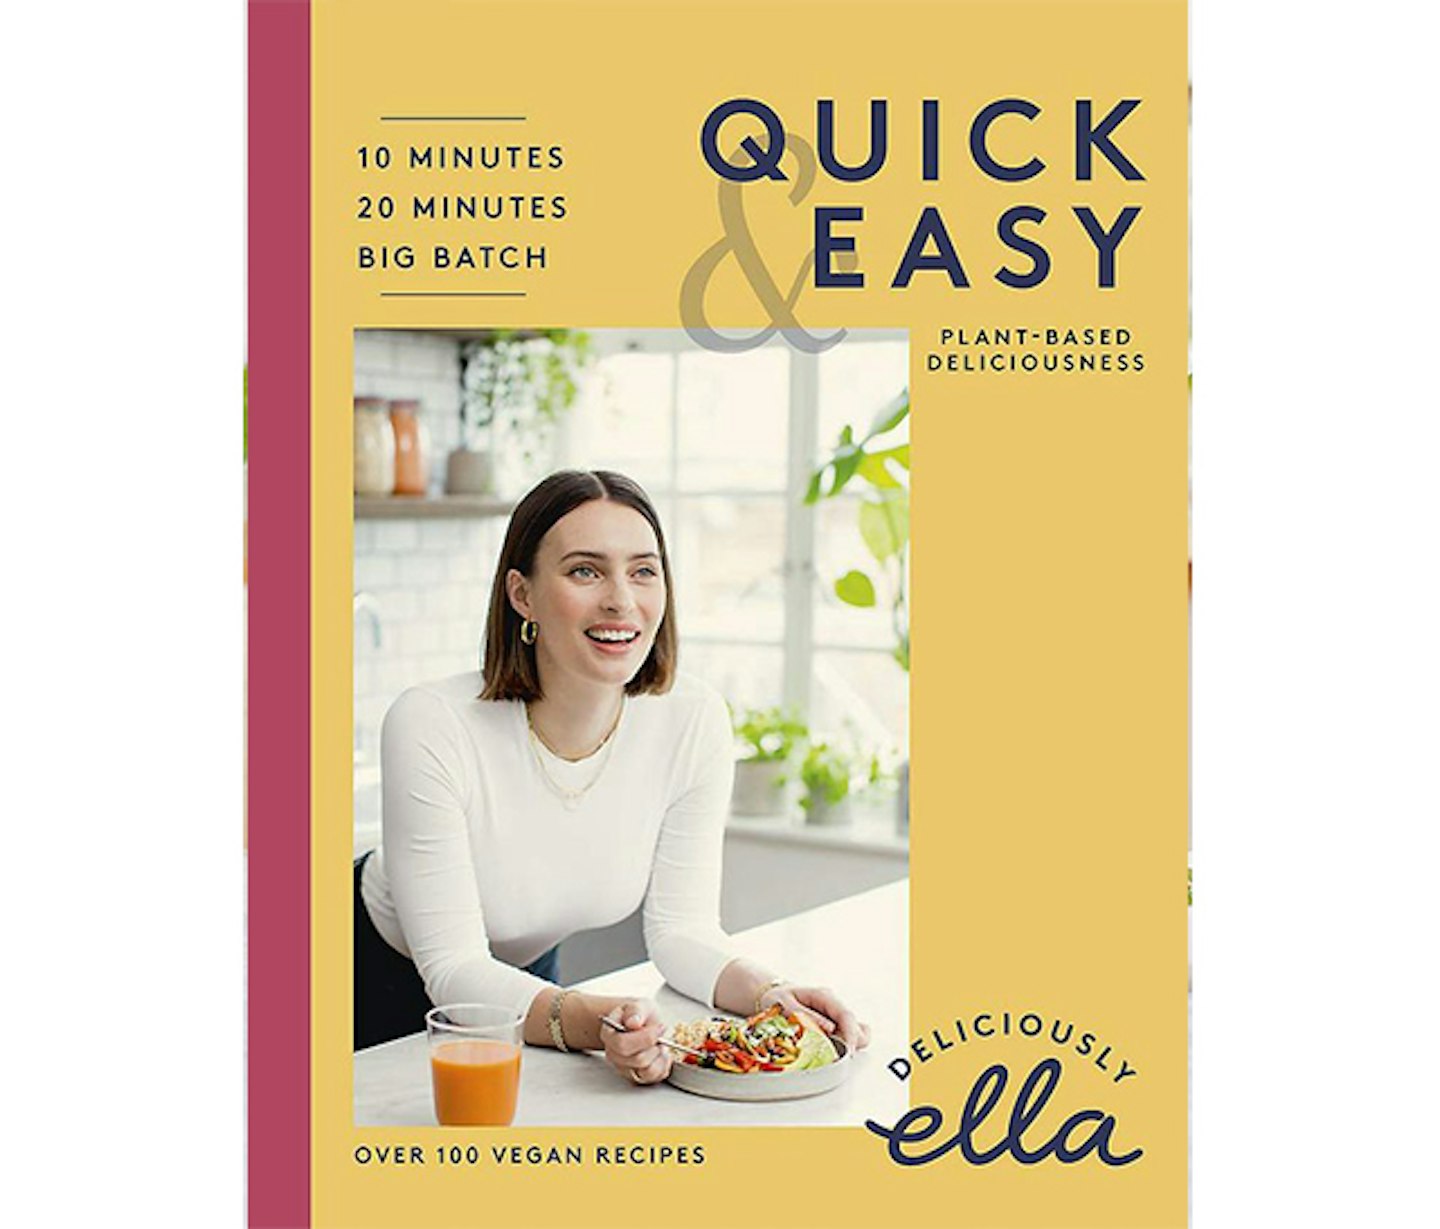 Quick & Easy by Deliciously Ella